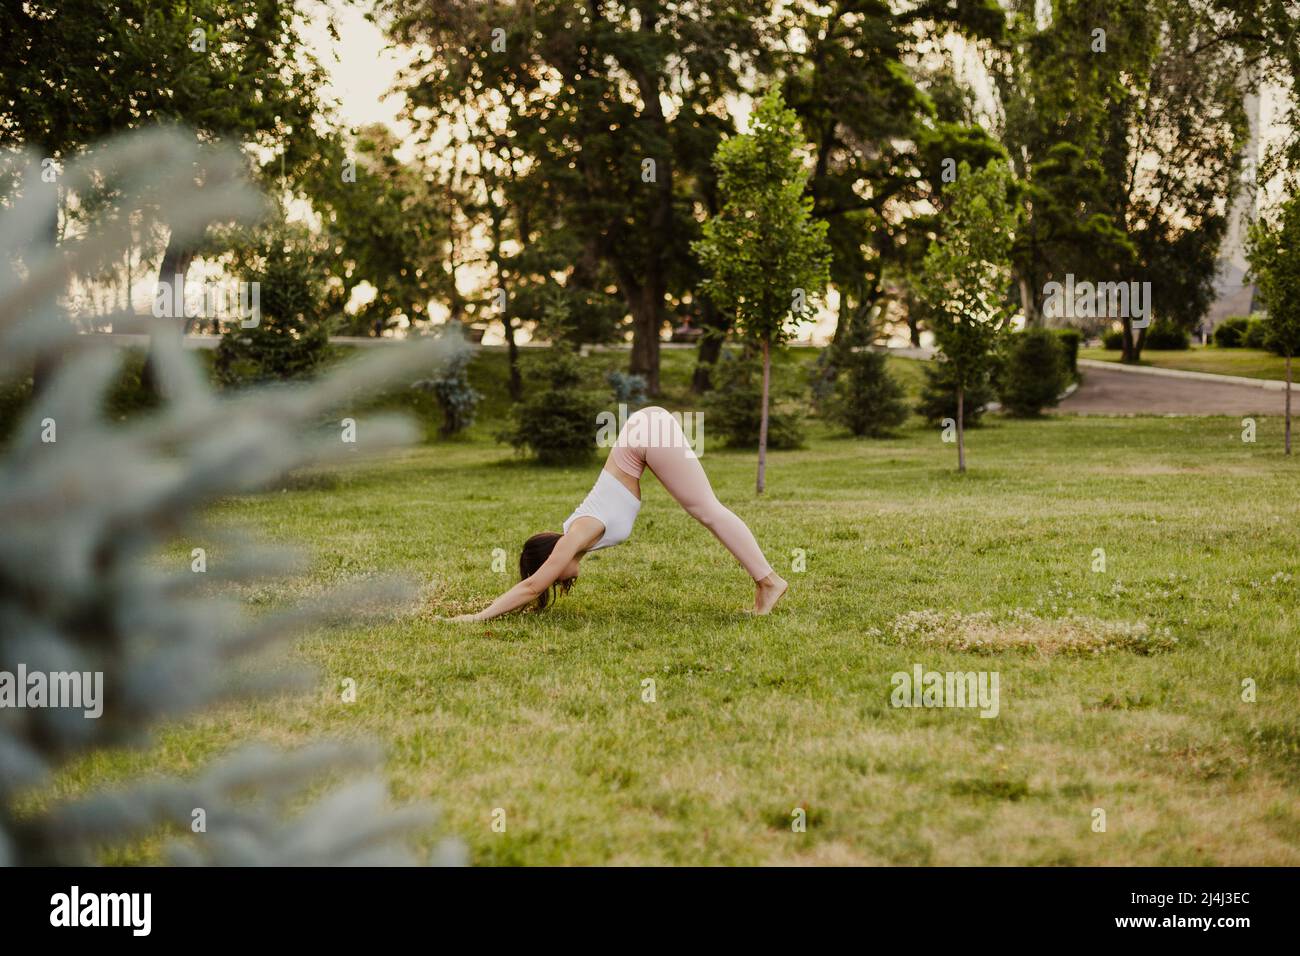 Attraktive, schöne Frau macht Yoga und steht bei Sonnenuntergang in nach unten gerichteter Hundepose auf grünem Rasen, Konzept der inneren Harmonie Stockfoto